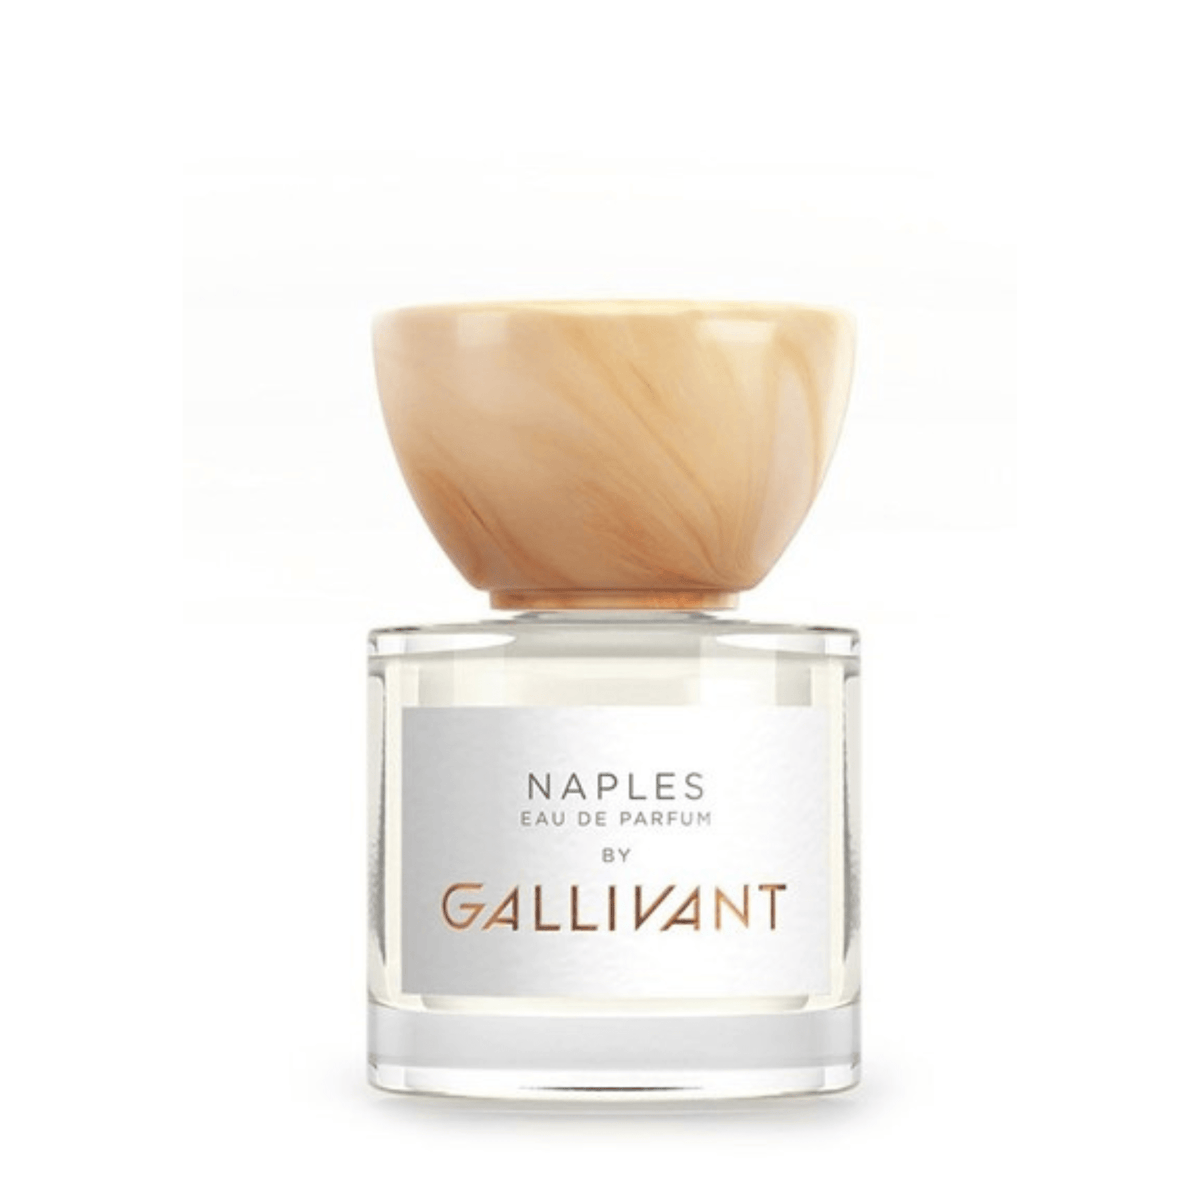 Primary Image of Naples Eau de Parfum